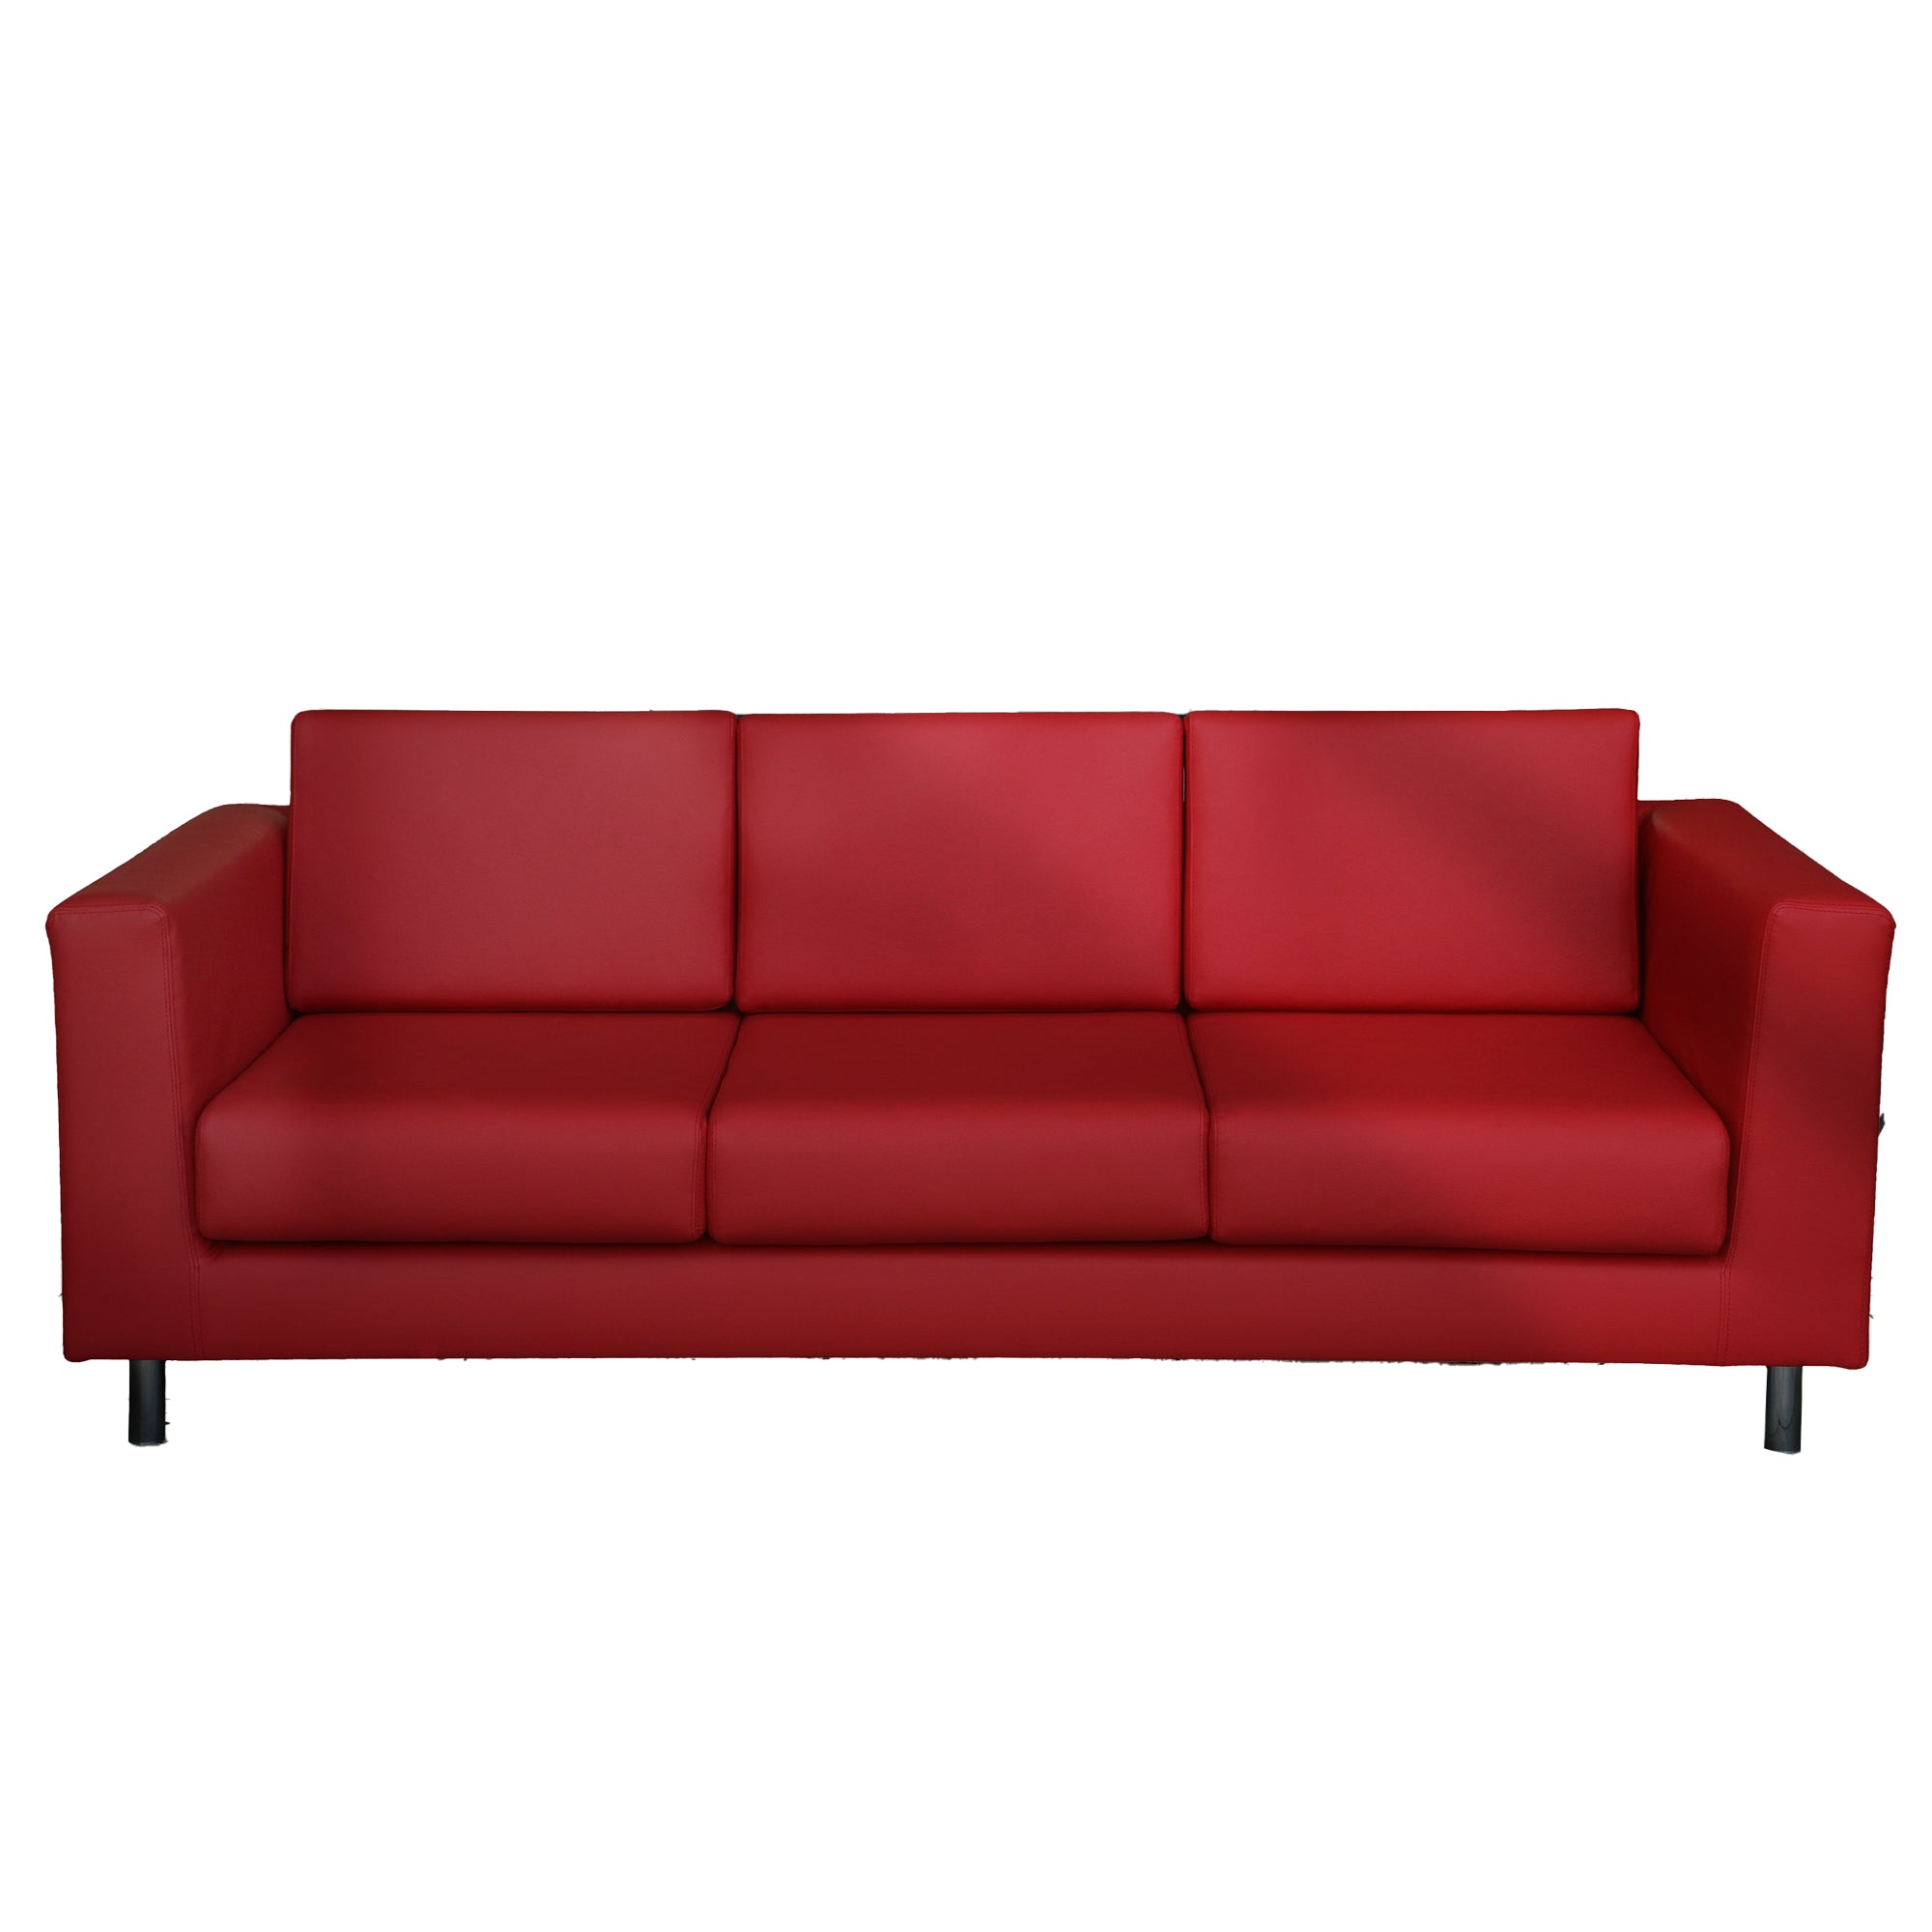 unisit-divano-erica-ek3-3-posti-rosso-braccioli-inclusi